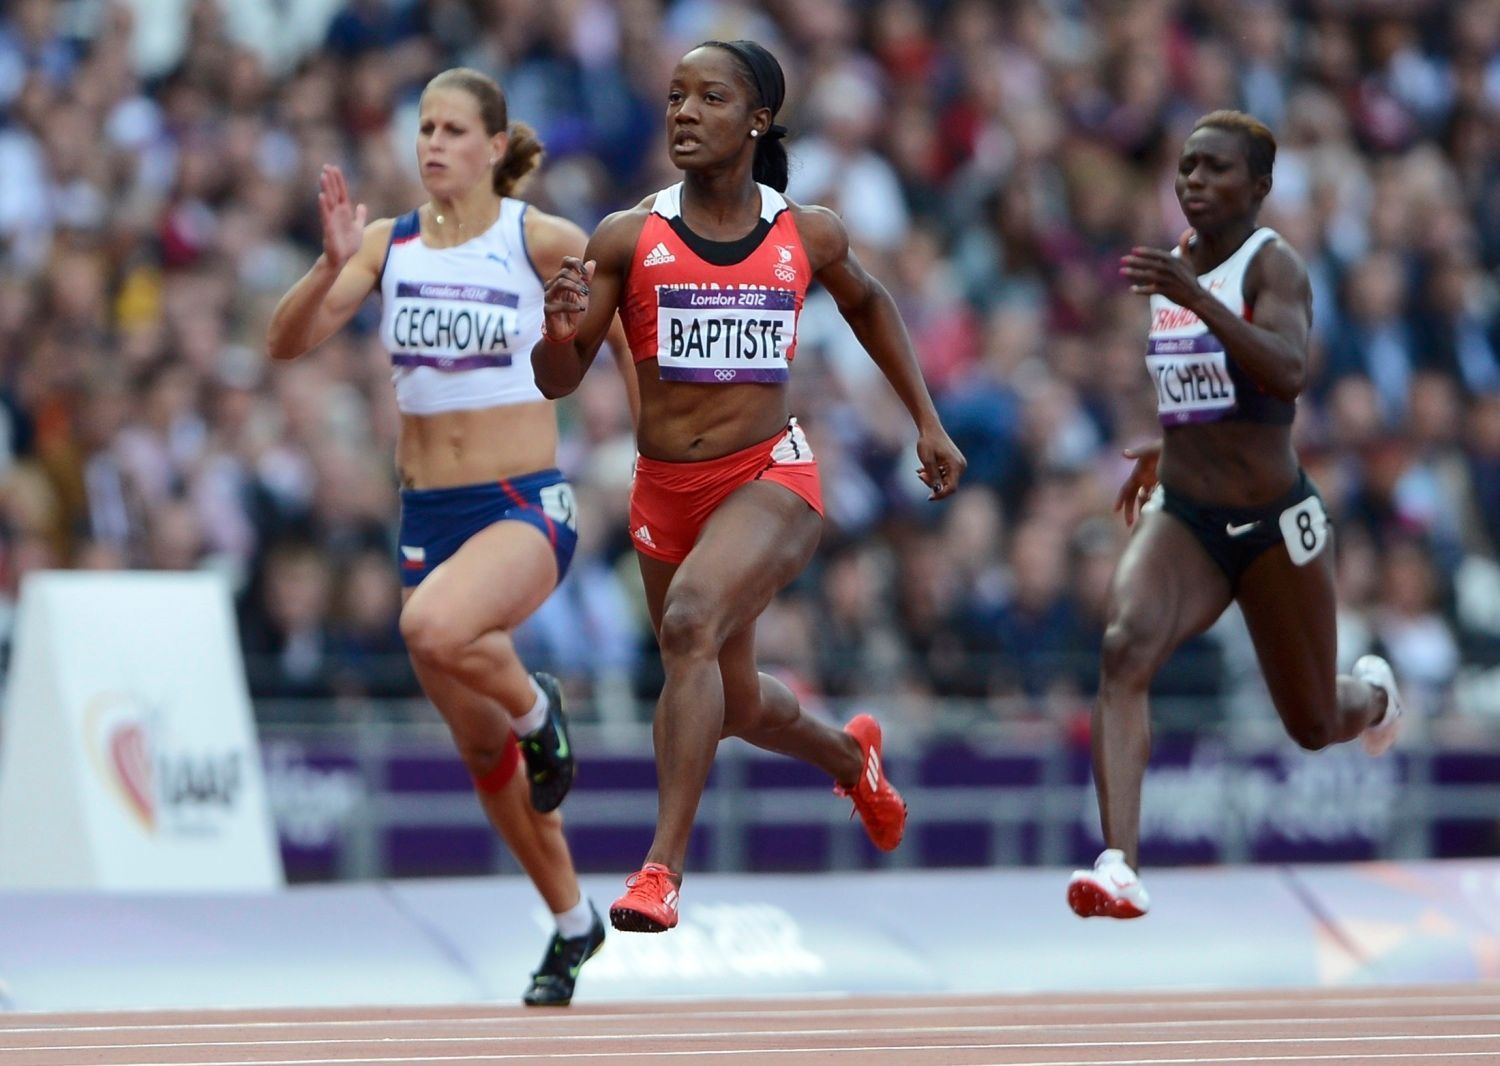 Česká sprinterka Kateřina Čechová (vlevo) dobíhá za Kelly-Ann Baptisteovou z Trinidadu a Tobaga (uprostřed) a před Kerri-Ann Mitchellovou z Kanady v závodě na 100 metrů na OH 2012 v Londýně.